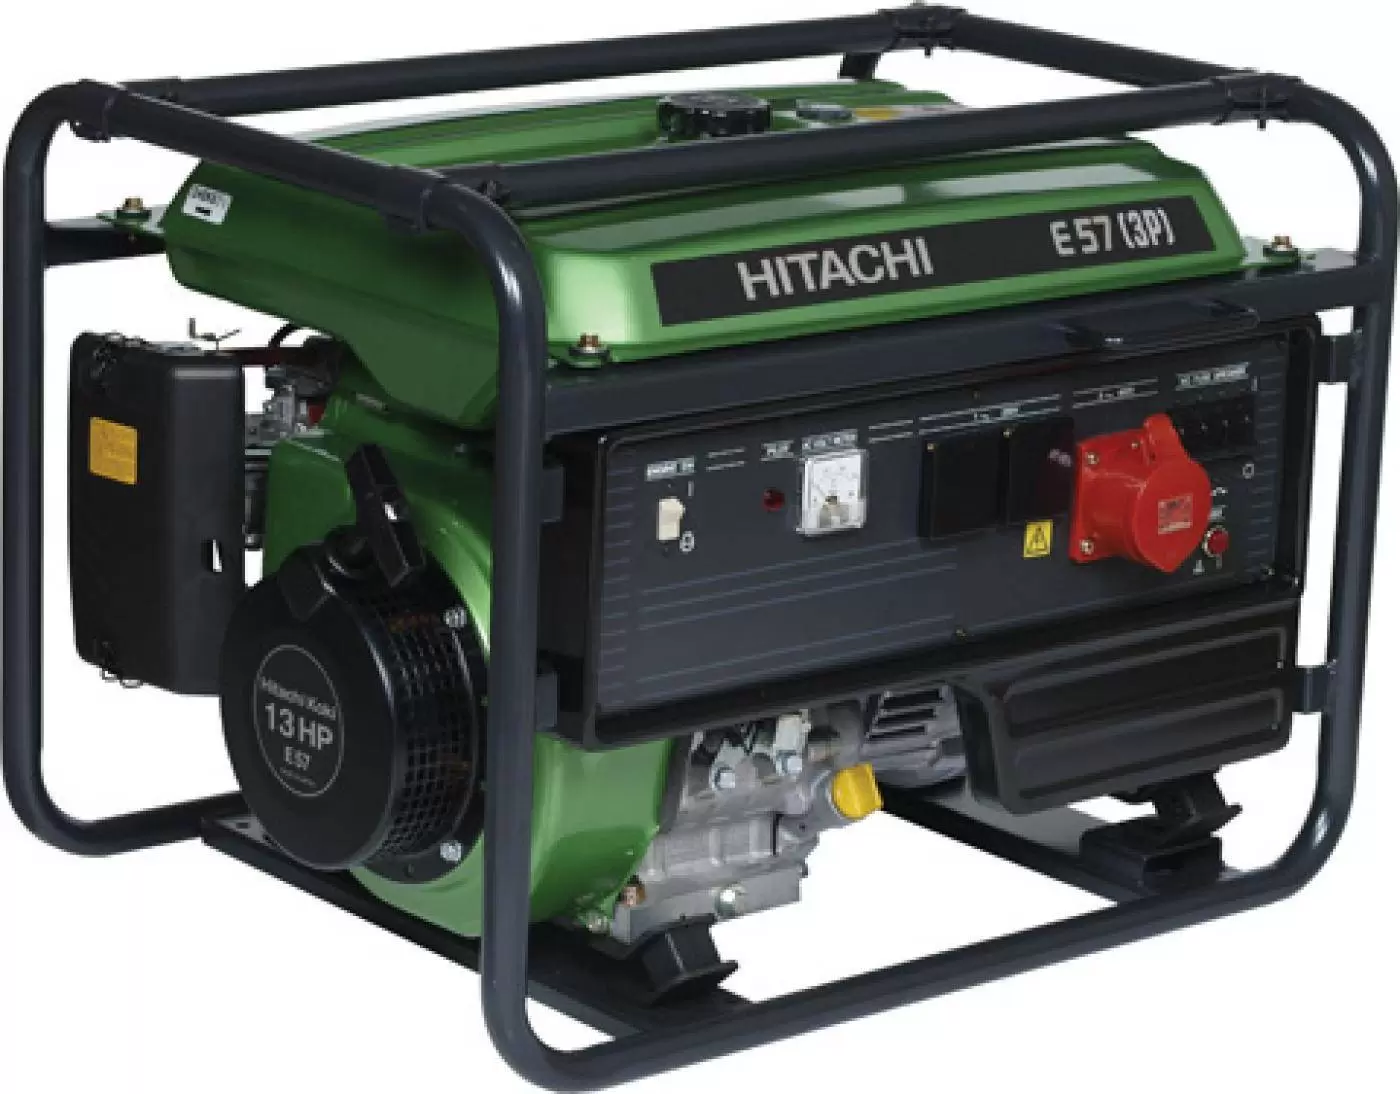 Купить генератор 3 фазный. Бензиновый Генератор Hitachi e50. Бензогенератор Hitachi e40 ЗР. Hitachi e50 (3p). Как снять двигатель на бензогенераторе Хитачи коки 6.0.